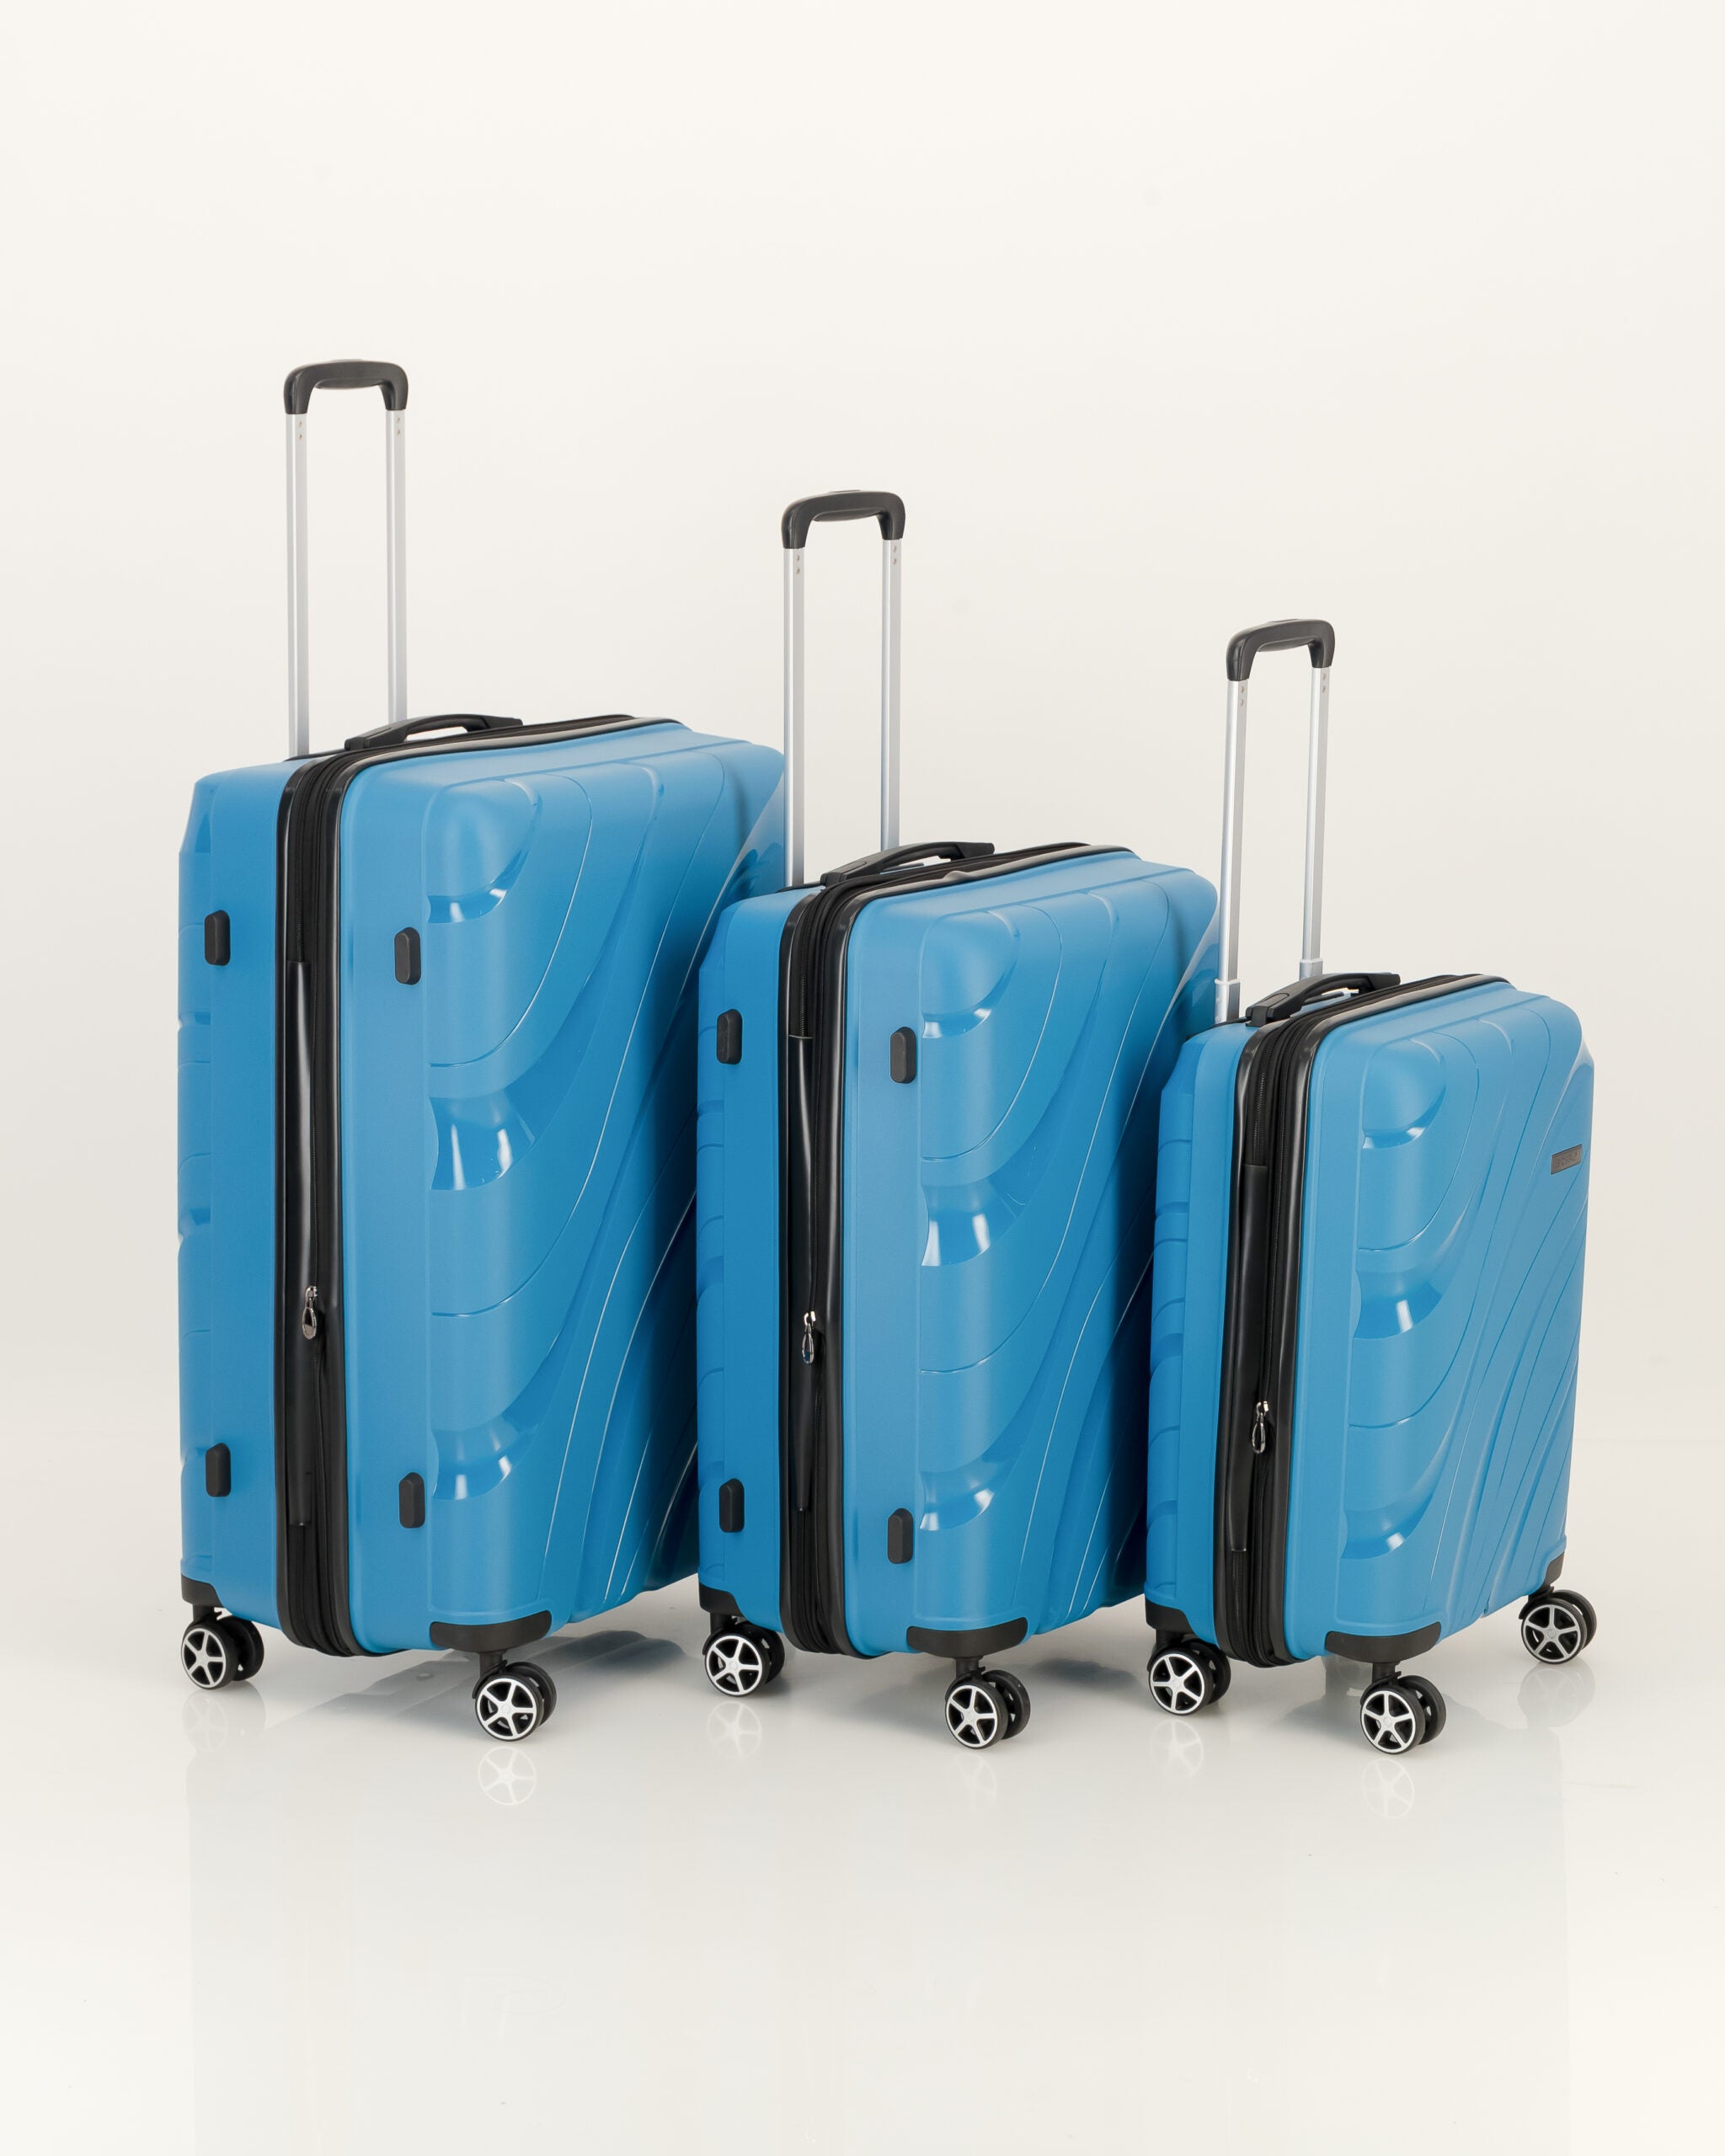 Orbit blue_full set suitcase_CR2_2